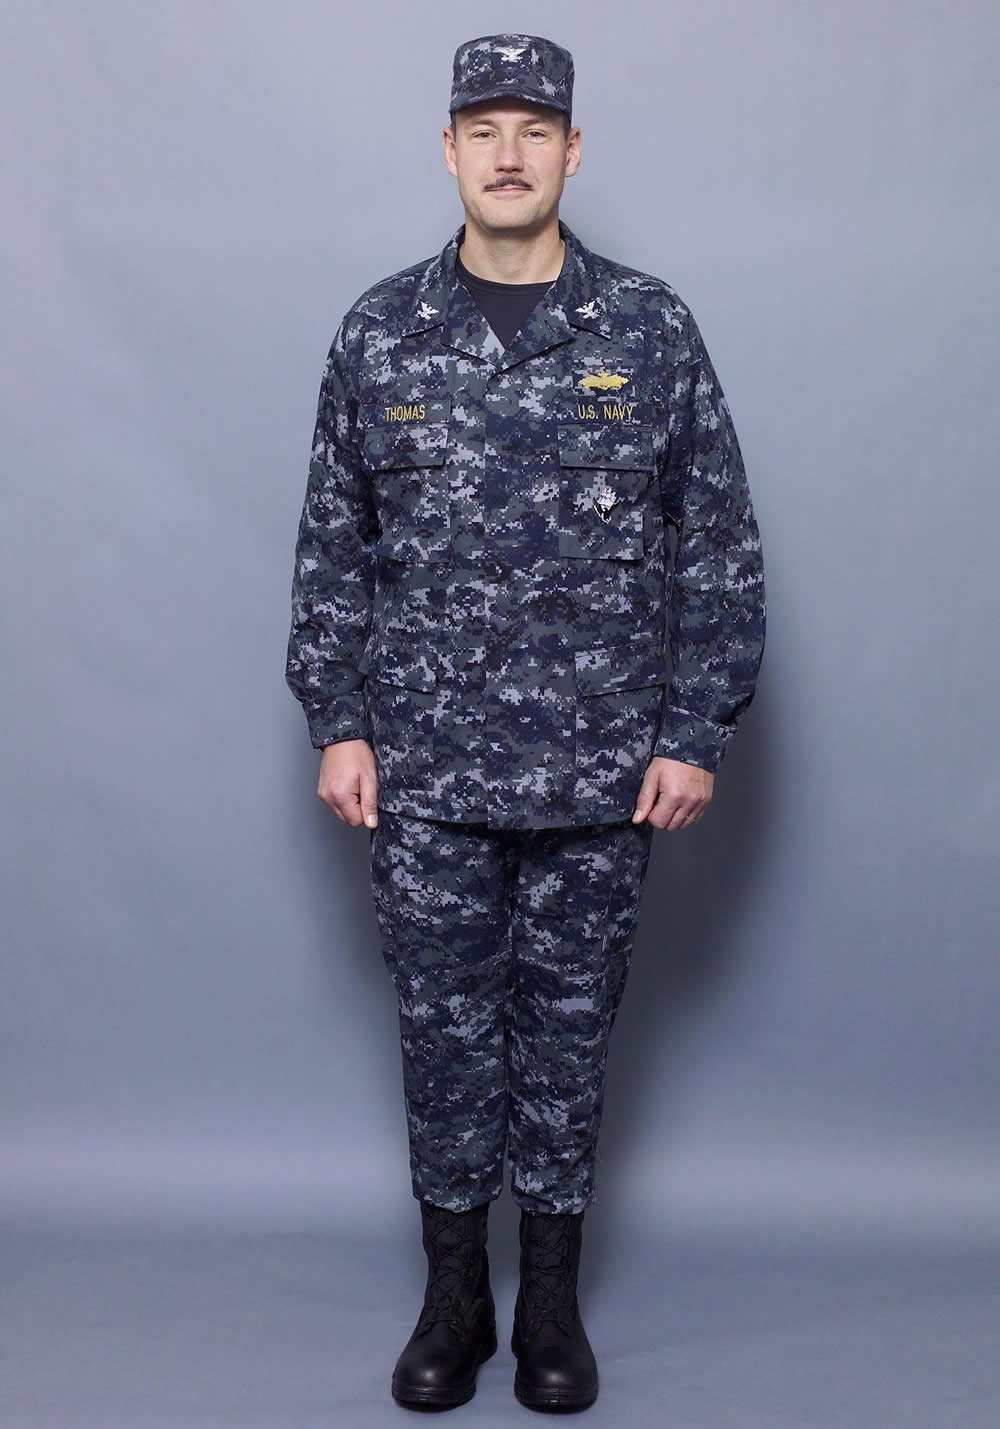 New Navy Officer Uniform 51